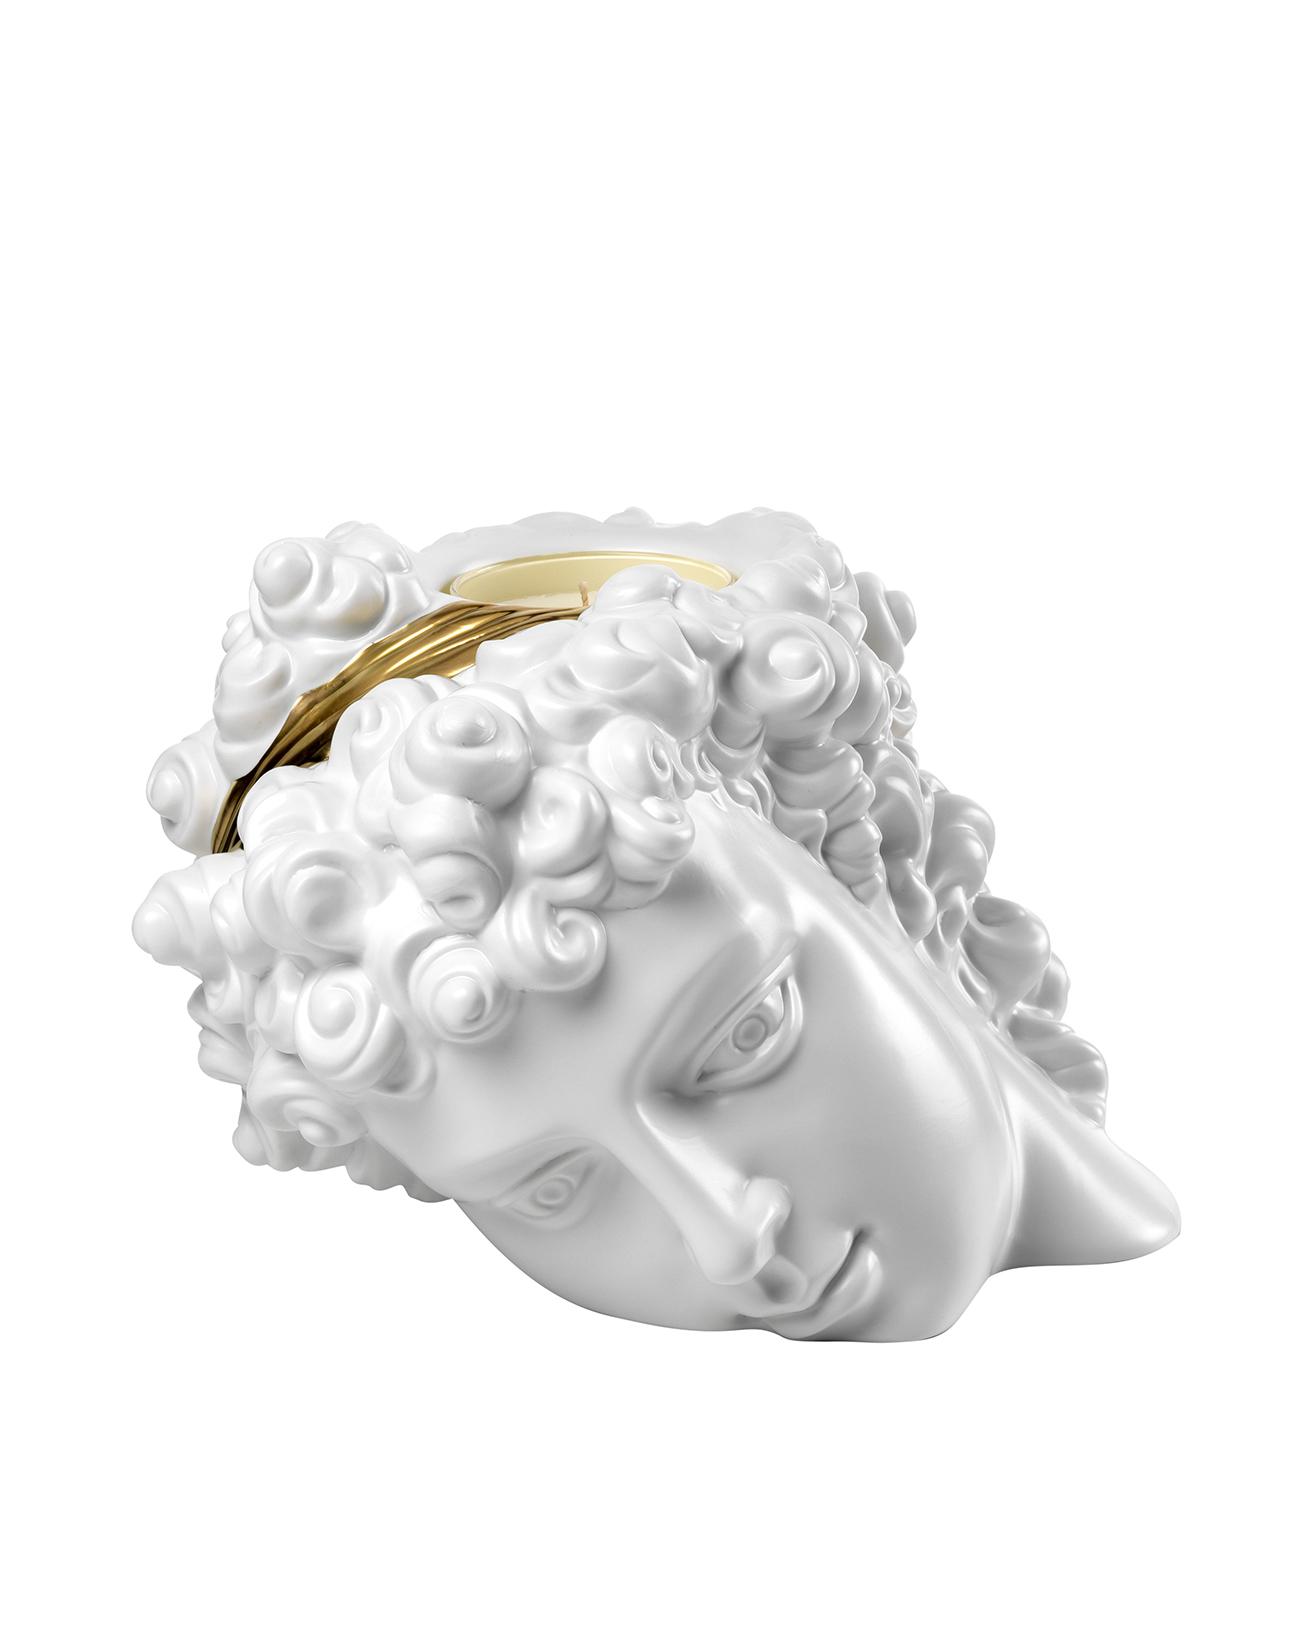 ヴェネツィアのスーベニールとしてのスペシャルオブジェは、光と闇が交差しますケンタウルスの館で発見されました、無名の彫刻家の手による青年像の頭部（ていうルークさまの妄想）。頭髪部分にキャンドルが装着されてますゆえ、暗いお部屋でひときわアヤシく輝くことでございましょう☆　キャンドルヘッド 253,000円。